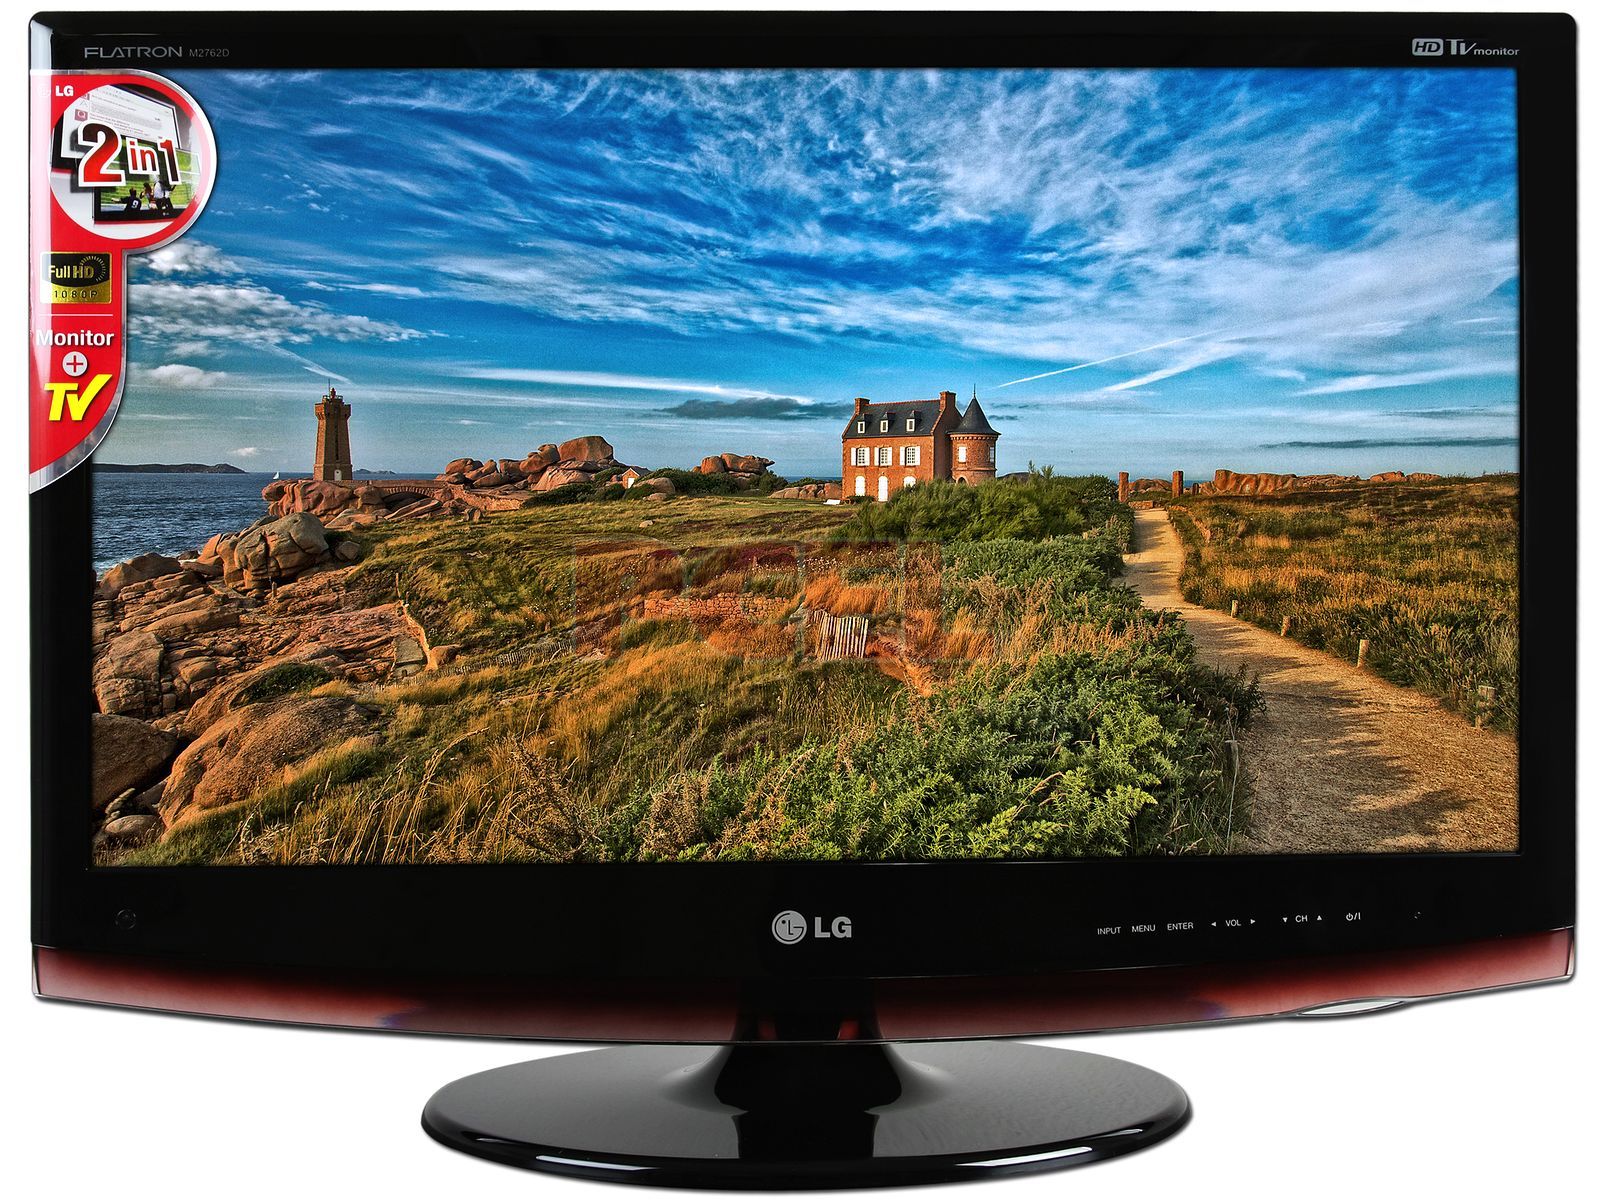 Televisión LCD LG FLATRON Modelo M2762D-WM de 27 HDTV. Color Negra